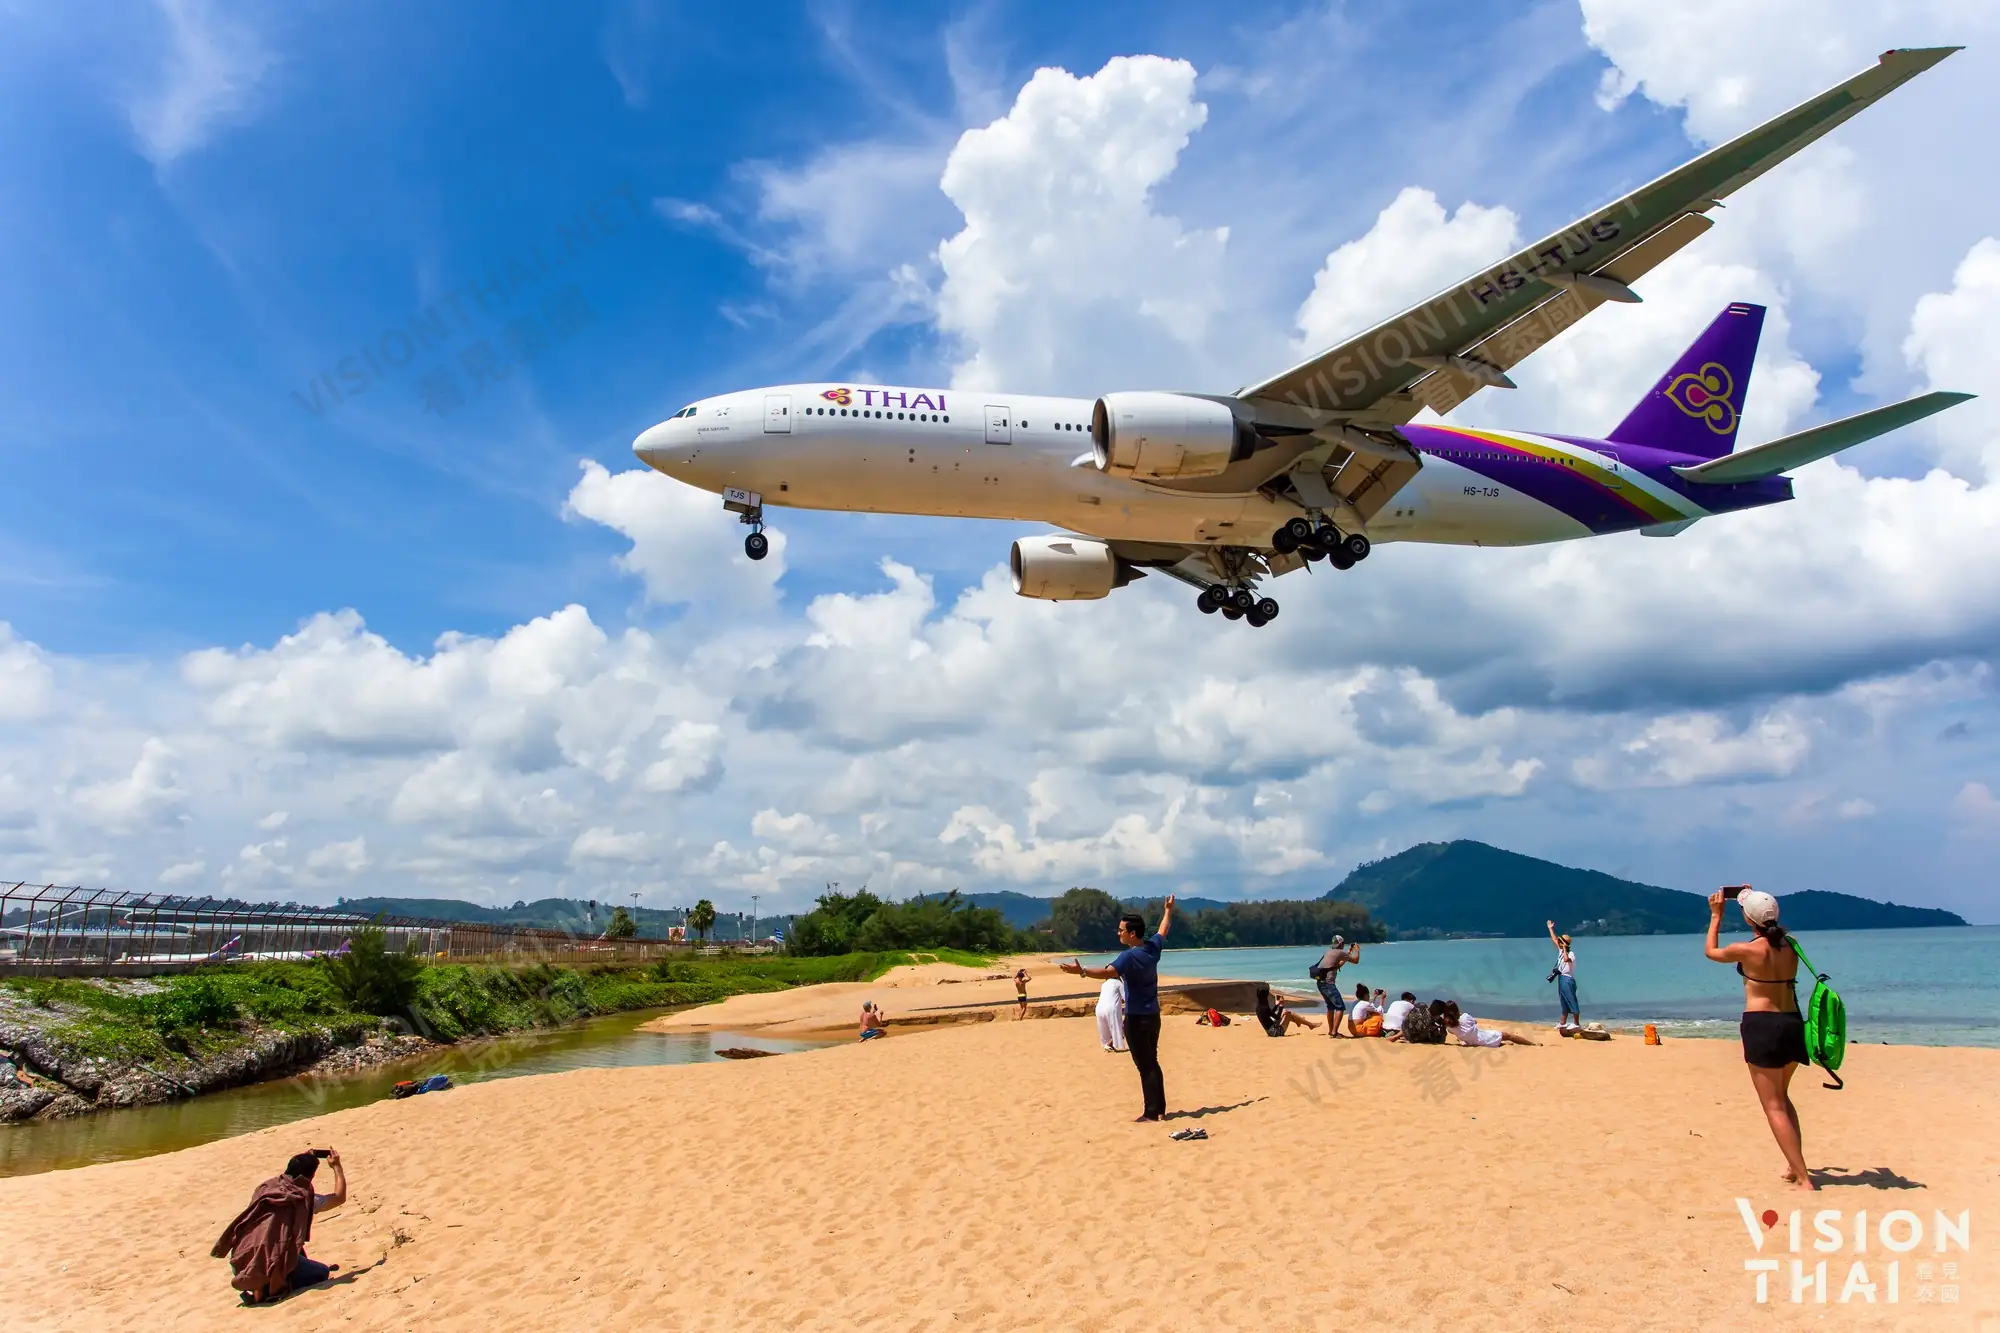 10月泰國普吉島旅遊開放試行 限1個月Long Stay入境(VISIONTHAI 看見泰國)